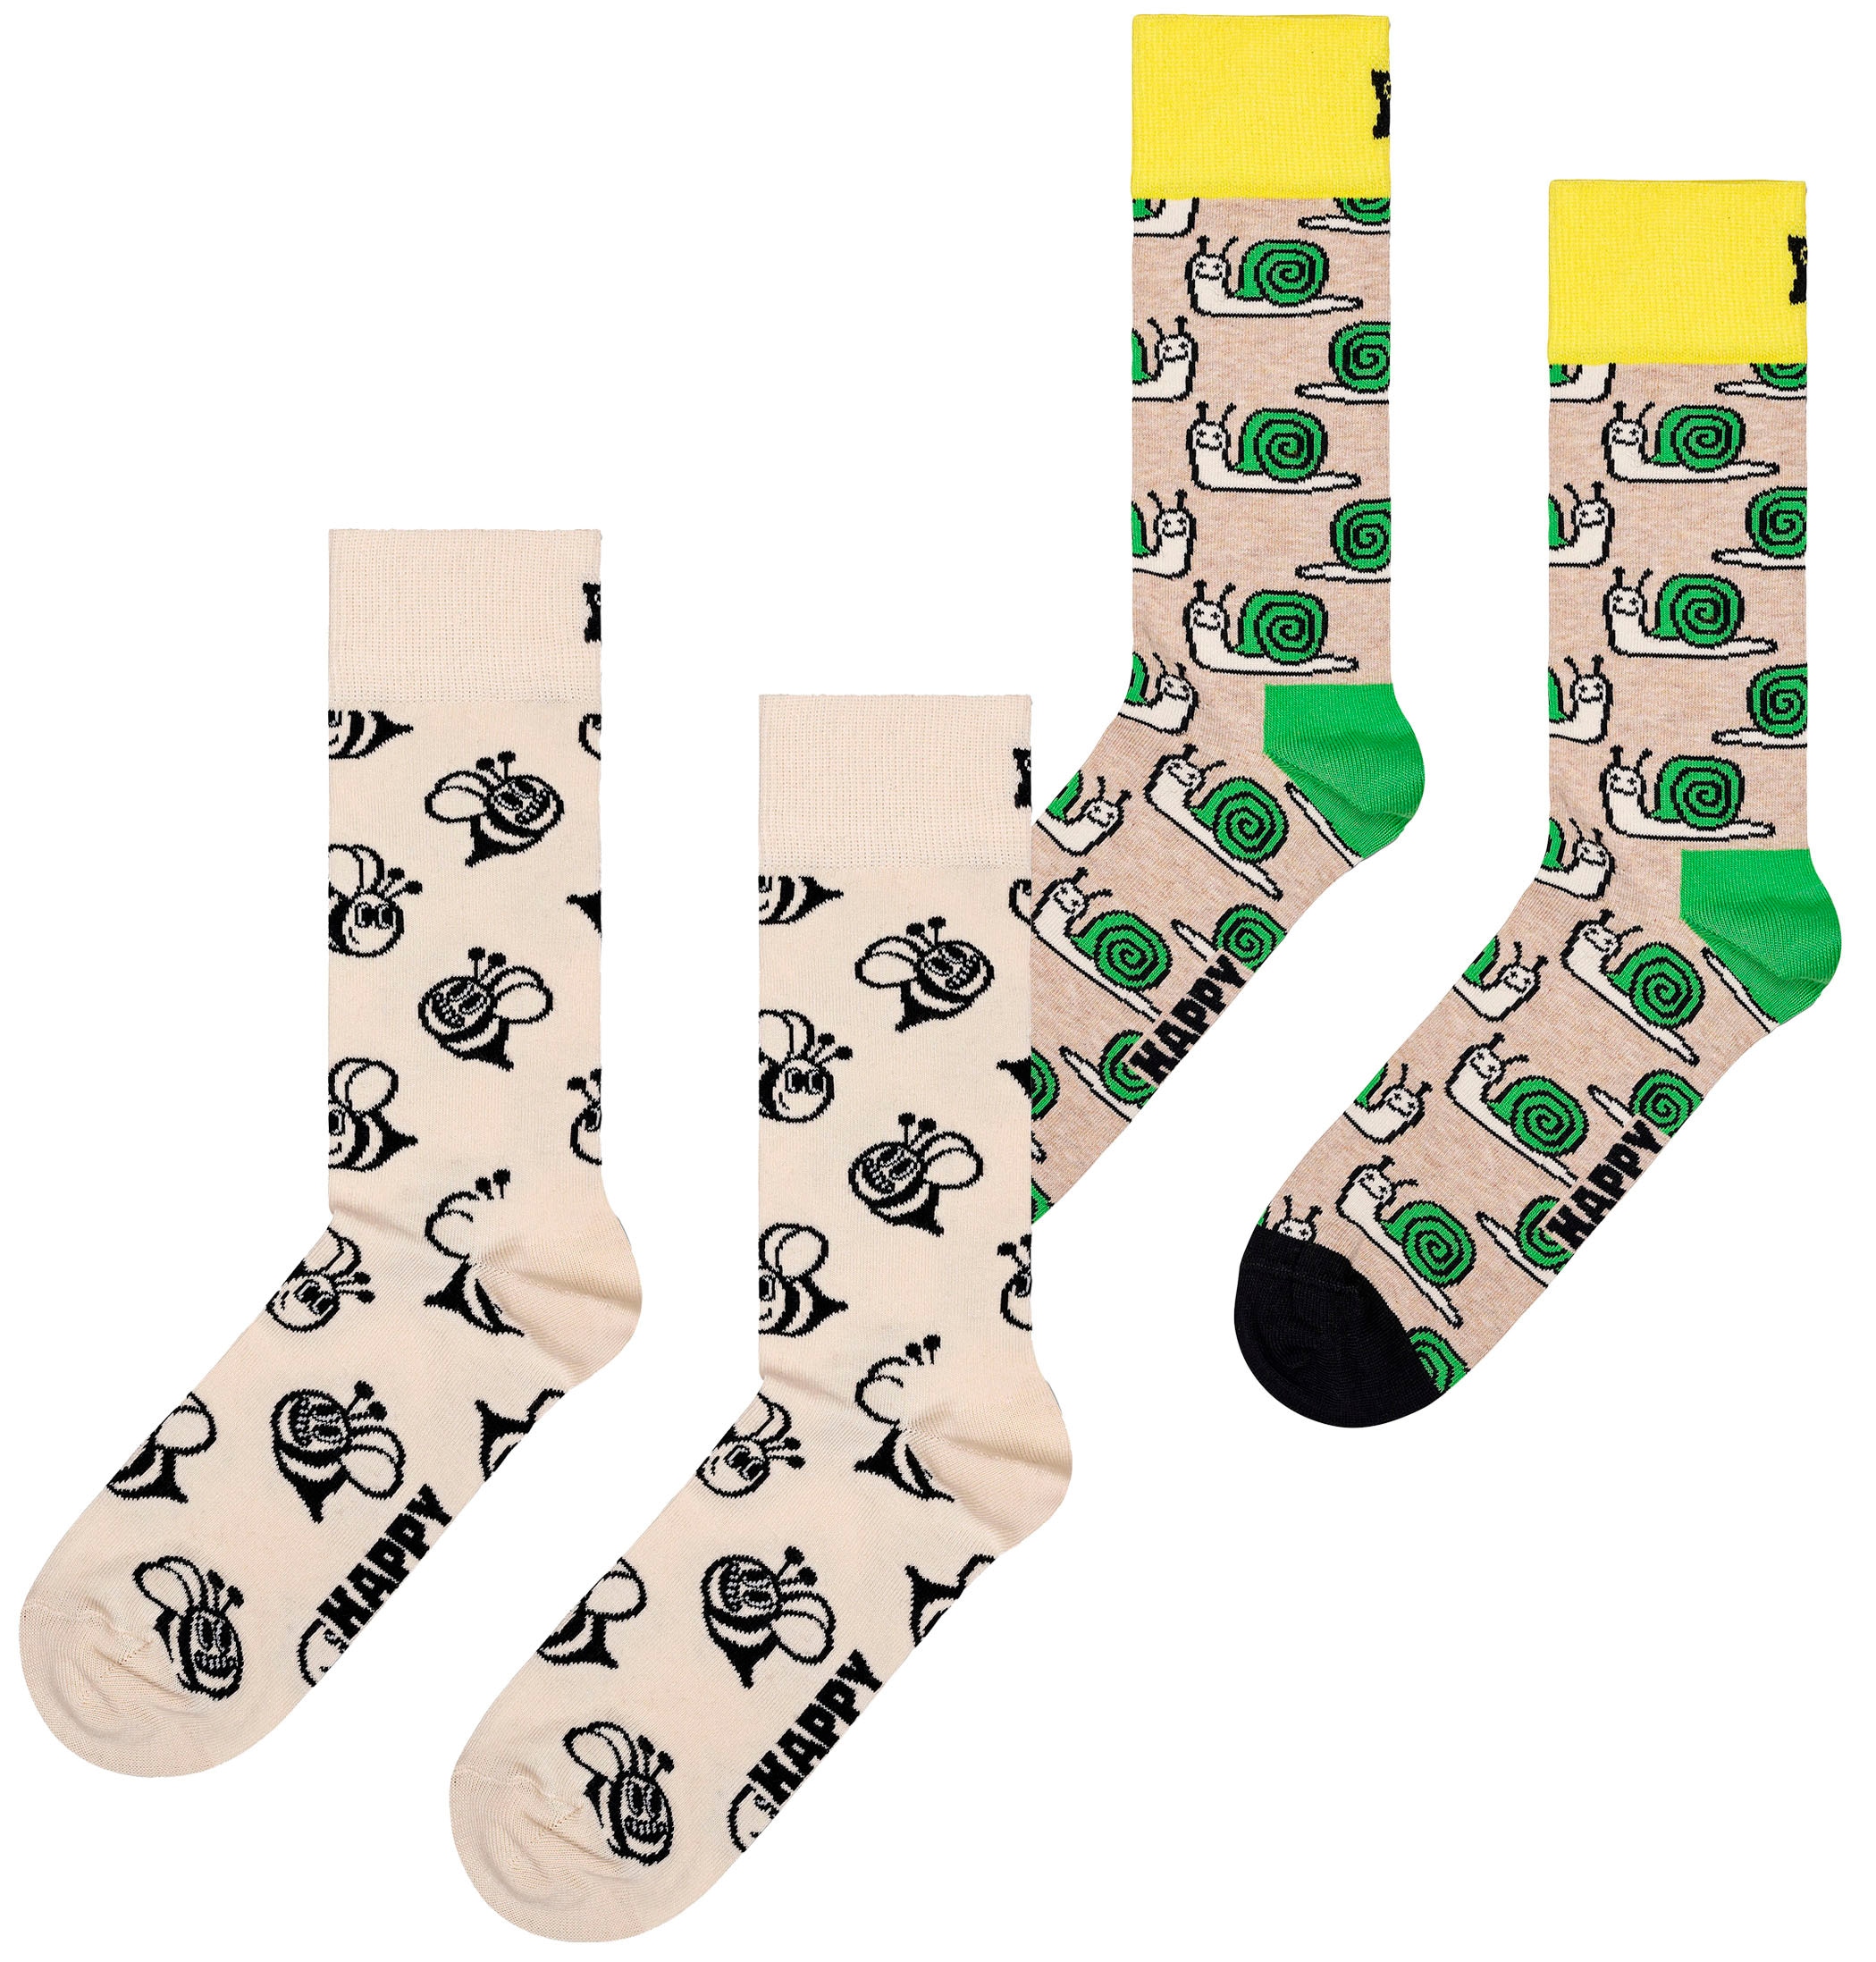 Snail Socks Socken, (2 Paar), & Socks Bee ♕ bei Happy